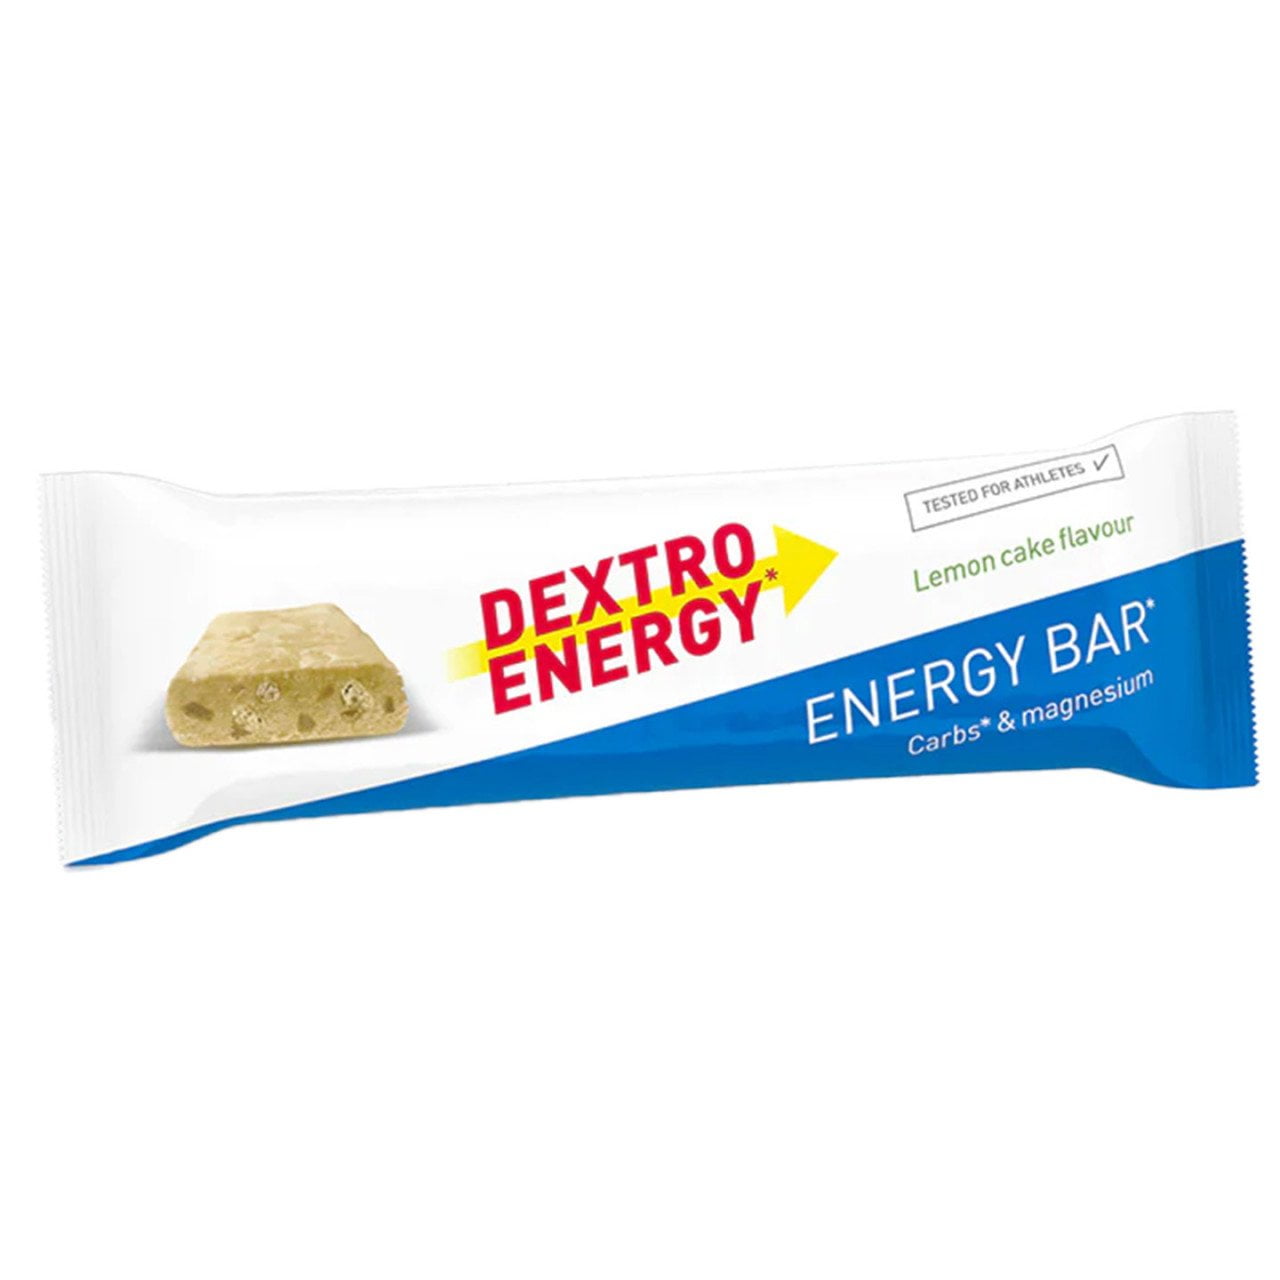 Energy Bar Lemon Cake